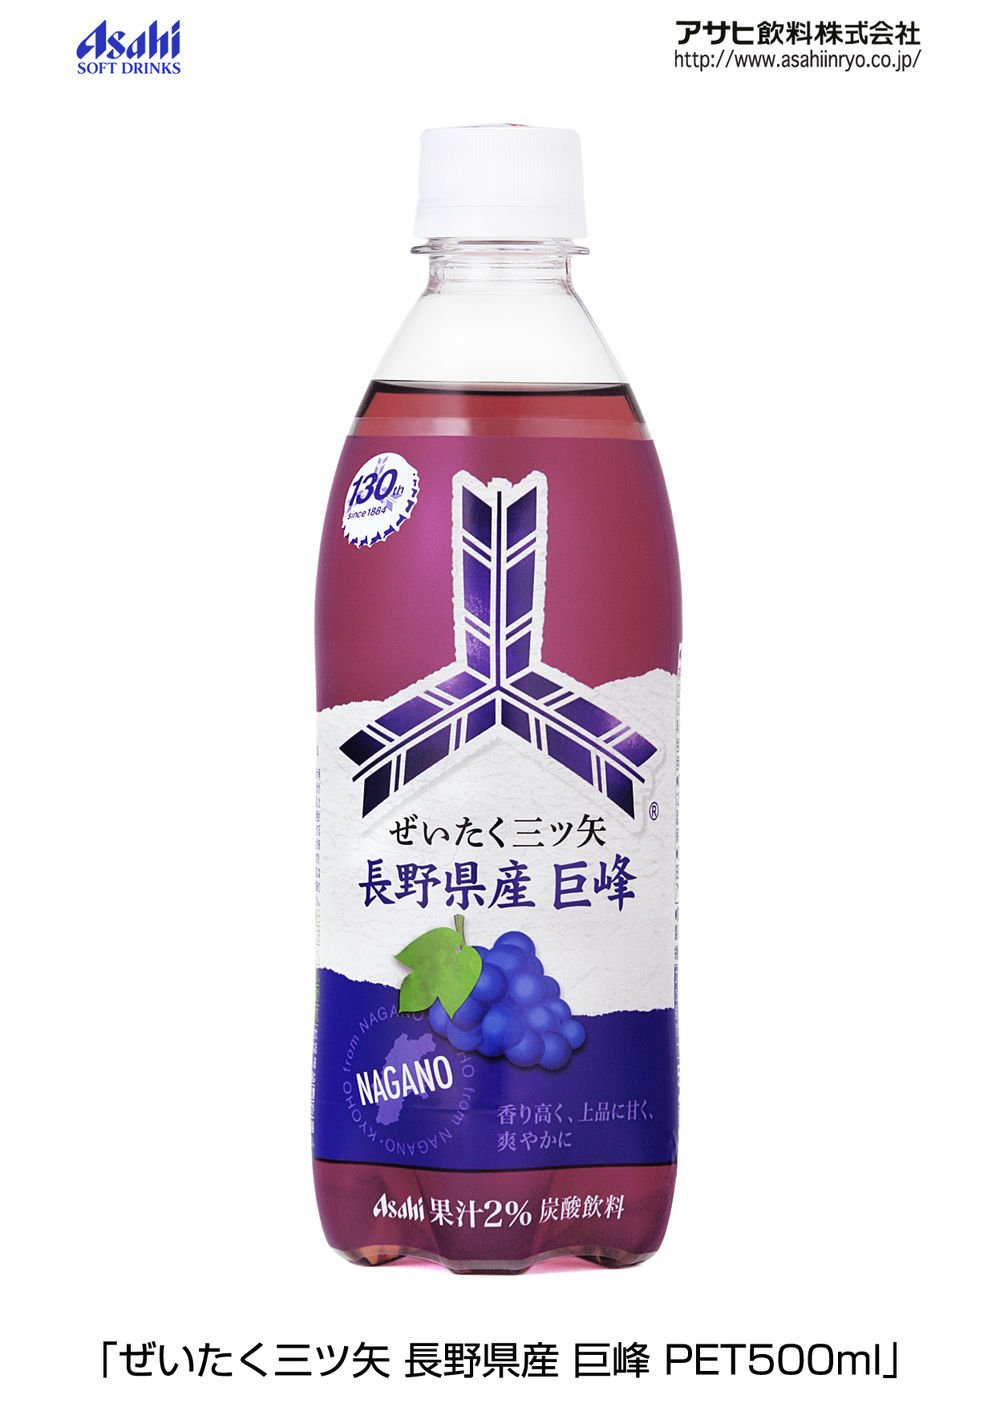 長野県産の巨峰果汁を使用した「ぜいたく三ツ矢」